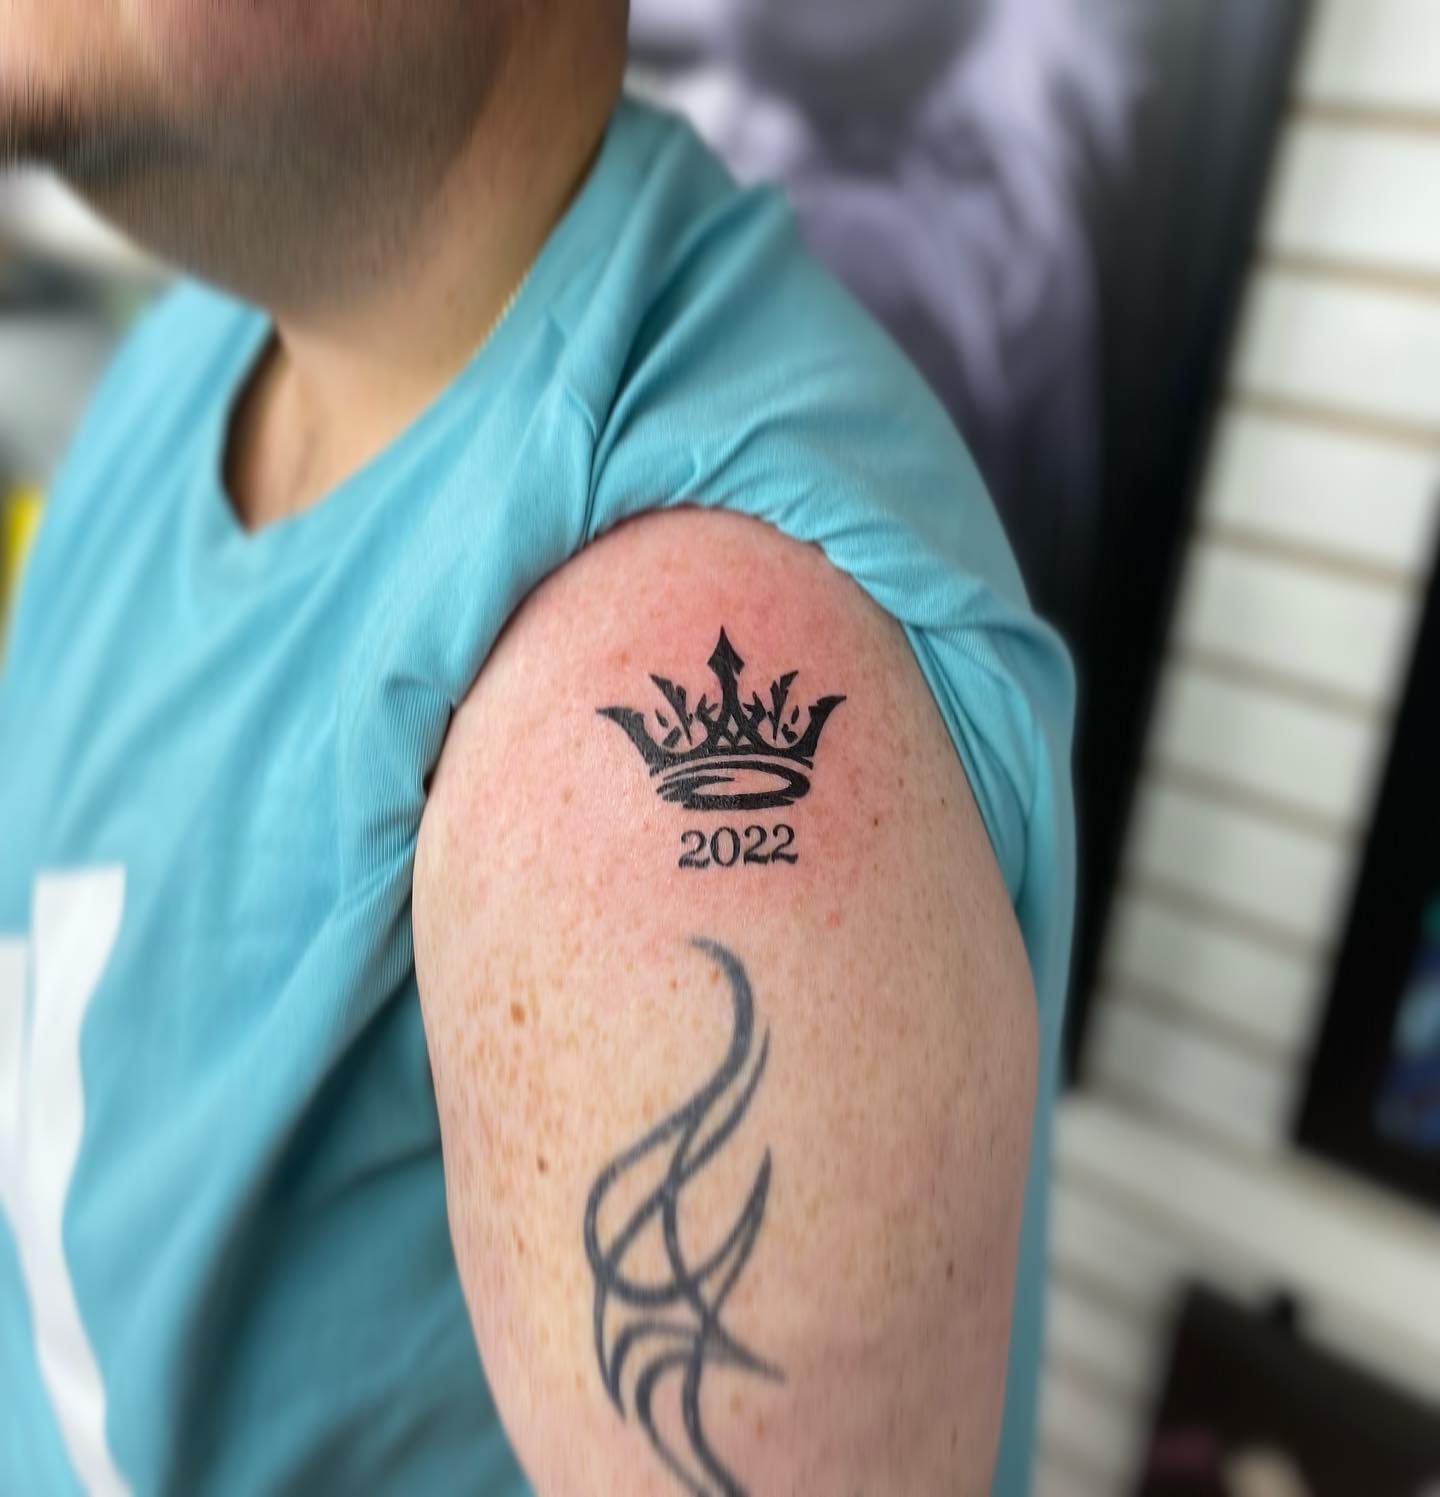 Tatuaje de corona sentimental.